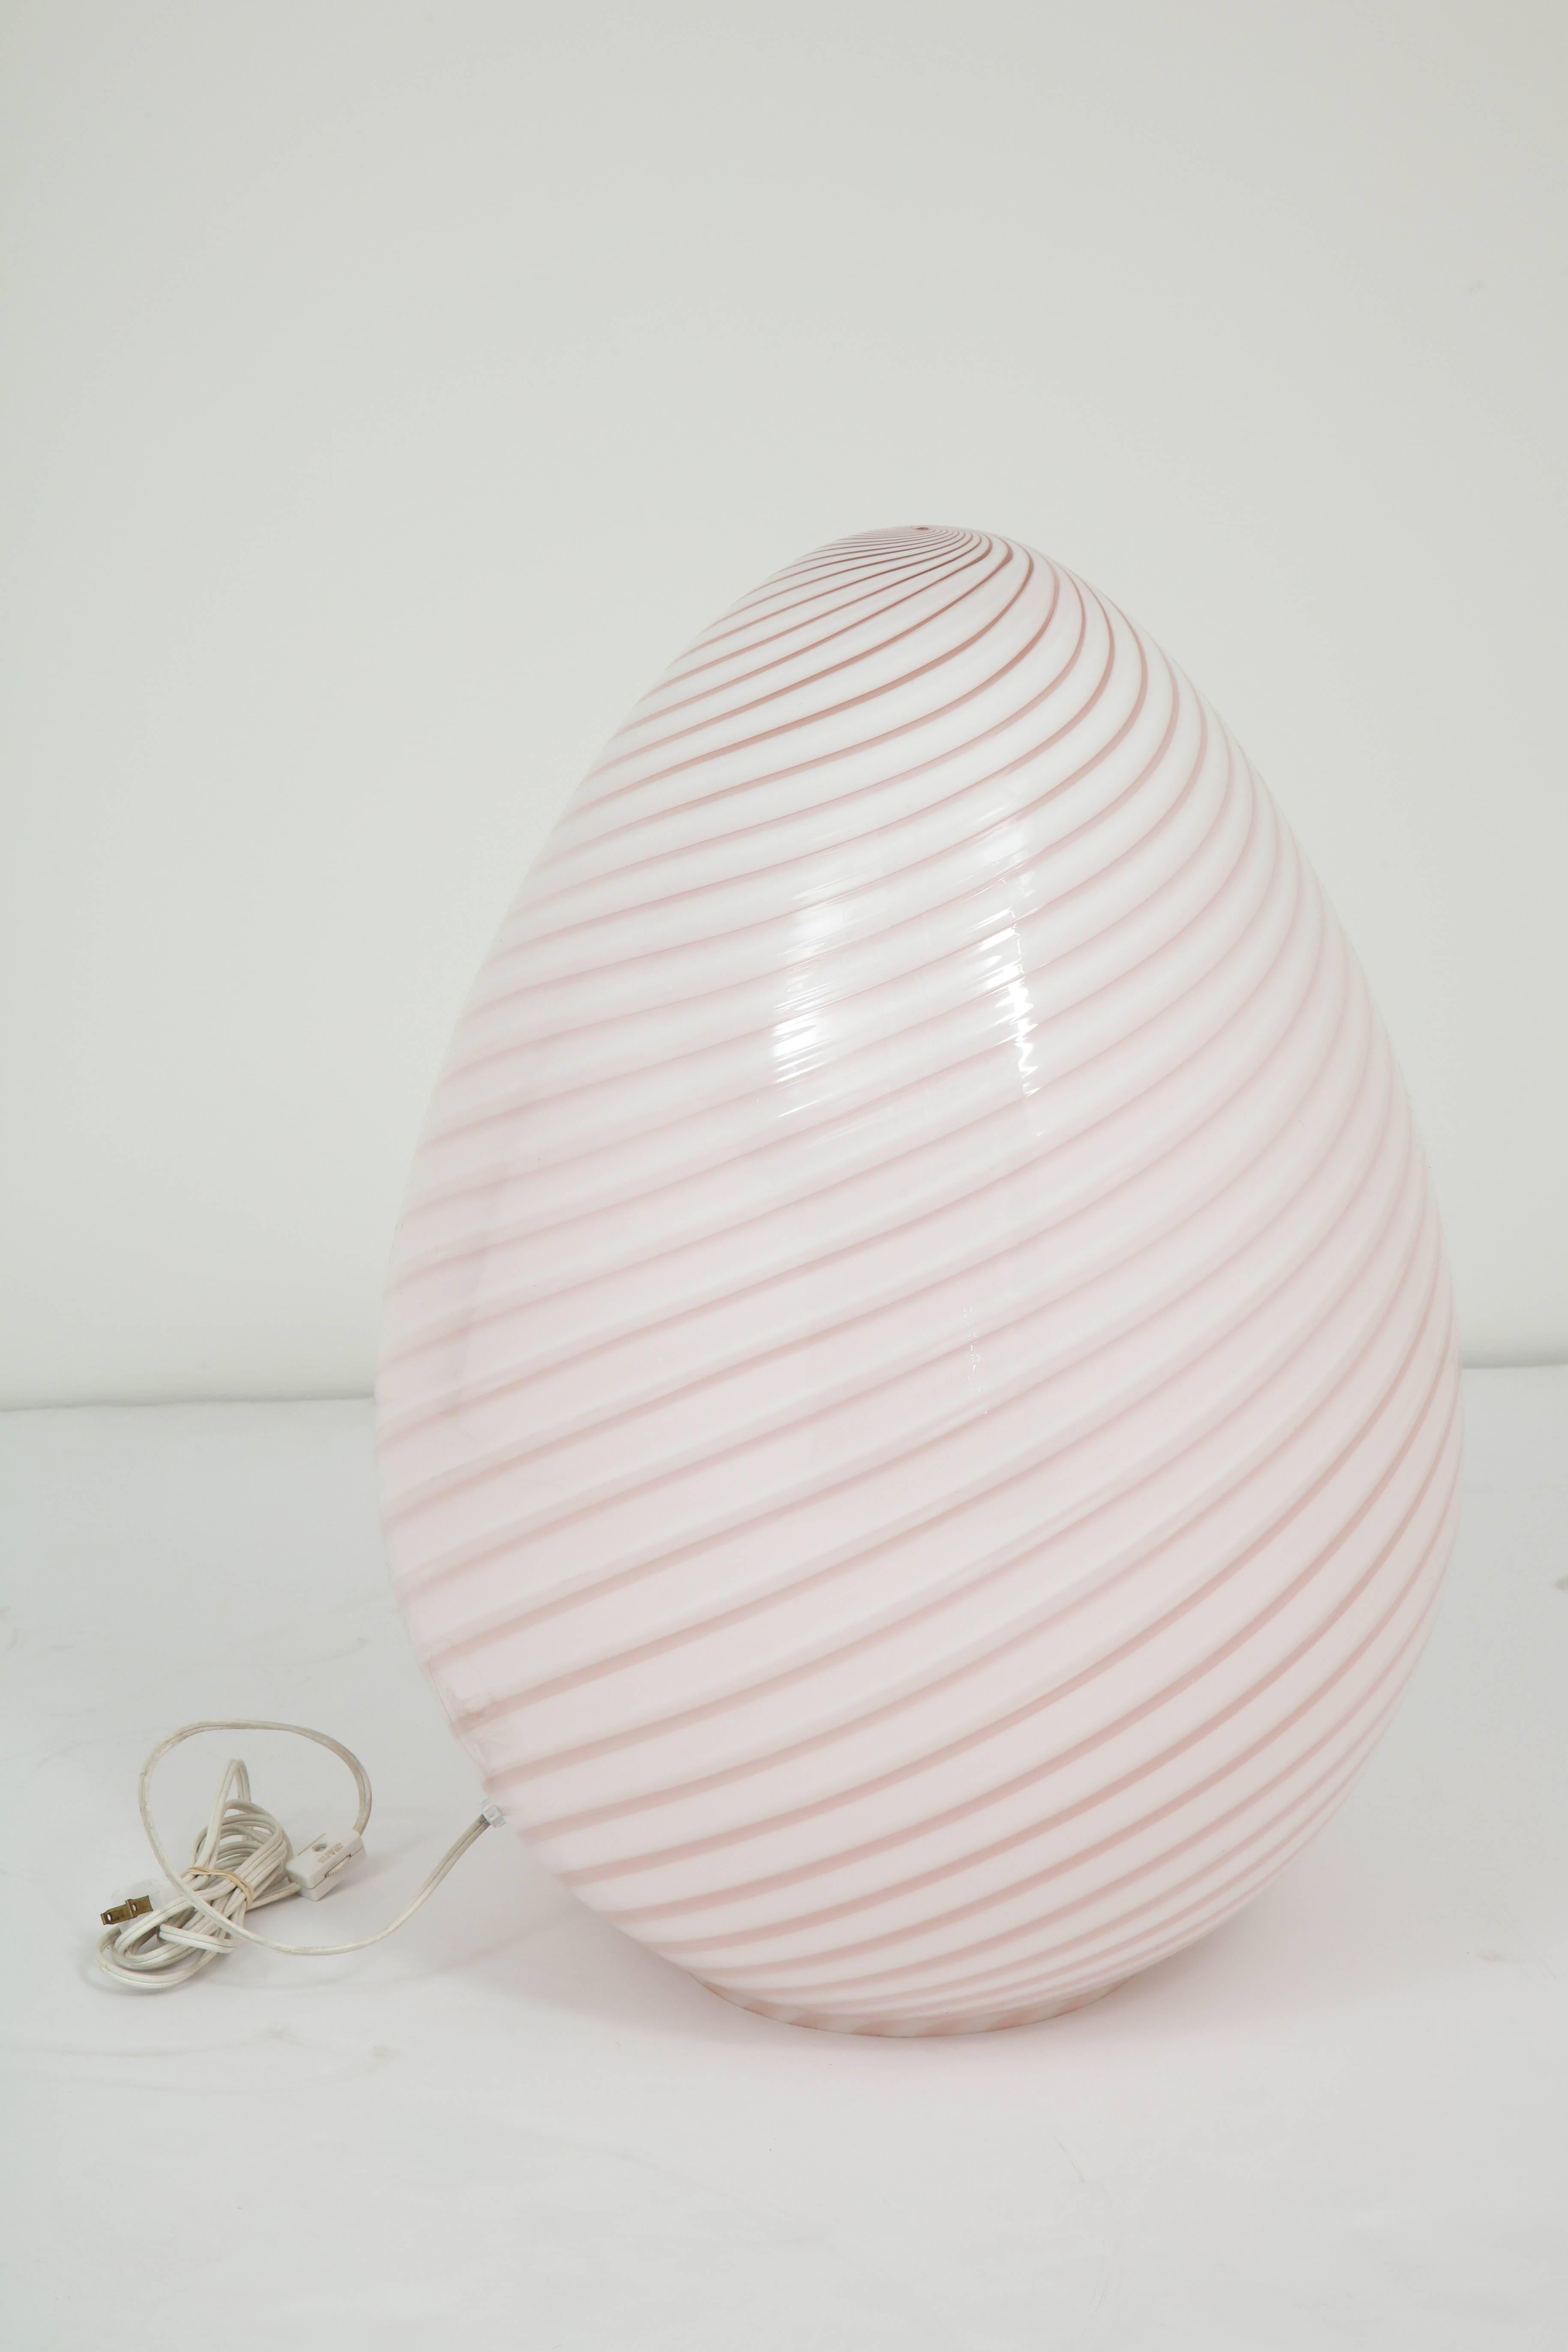 Murano Glass Large Egg Lamp by Vetri Murano